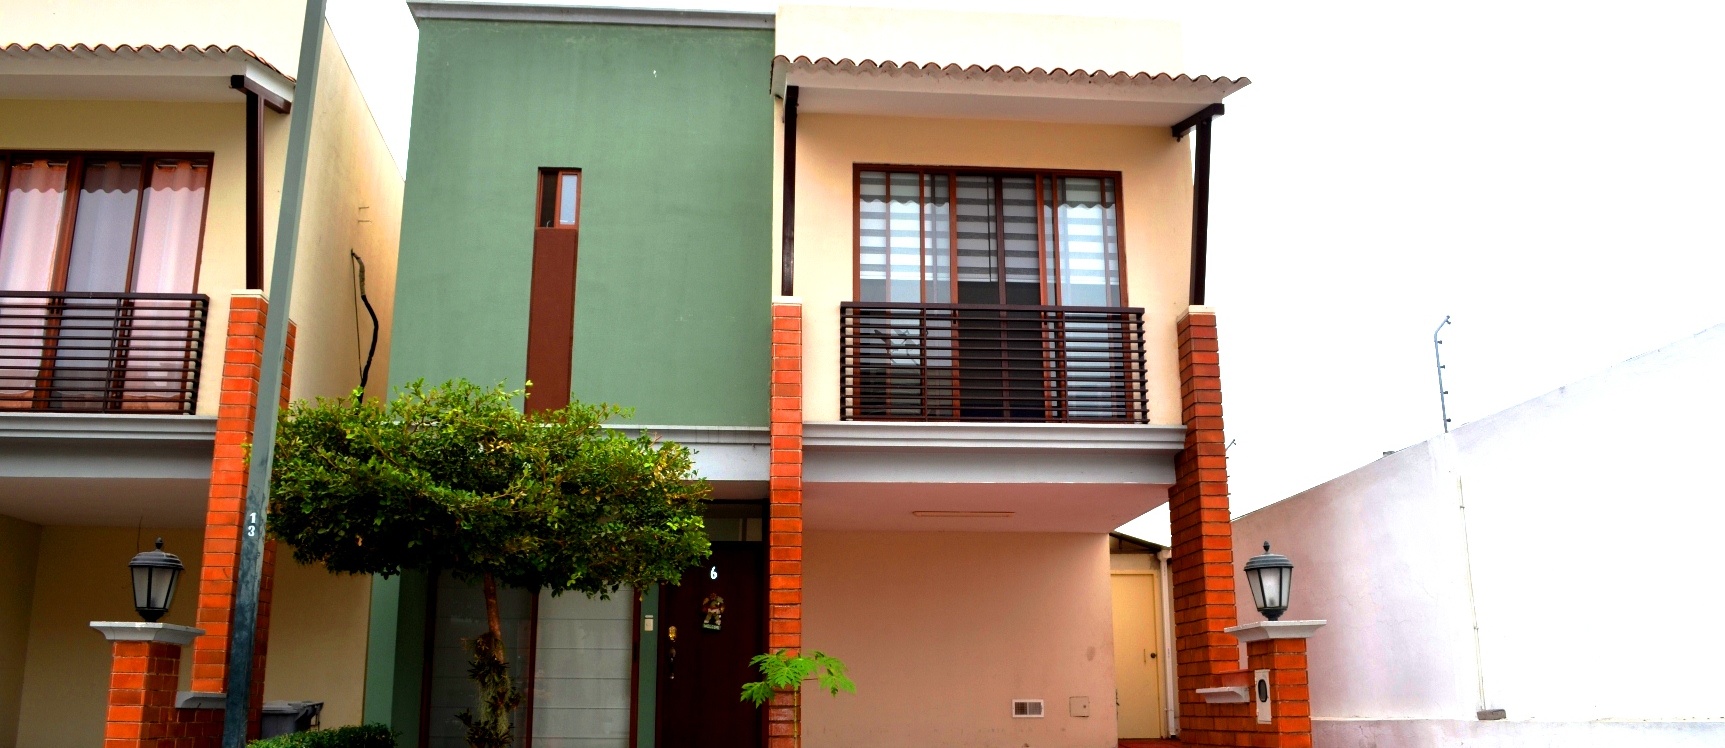 GeoBienes - Casa en Alquiler en urbanización Bali via samborondon  - Plusvalia Guayaquil Casas de venta y alquiler Inmobiliaria Ecuador